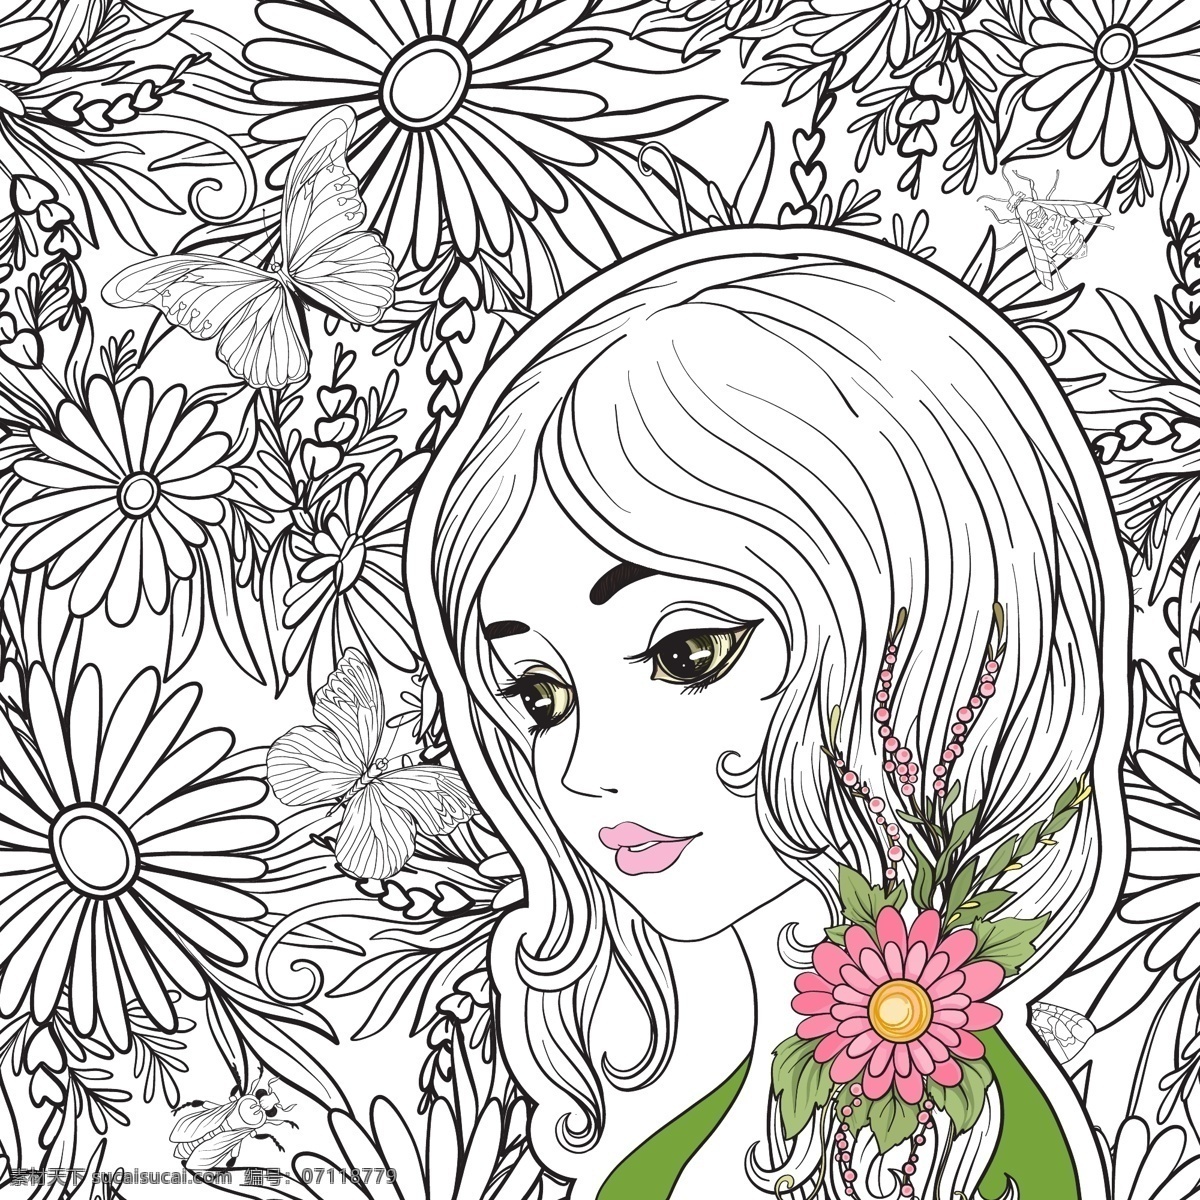 手绘 动漫 少女 矢量 插画 黑色 花朵 卡通 可爱 绿色 免扣素材 素材合集